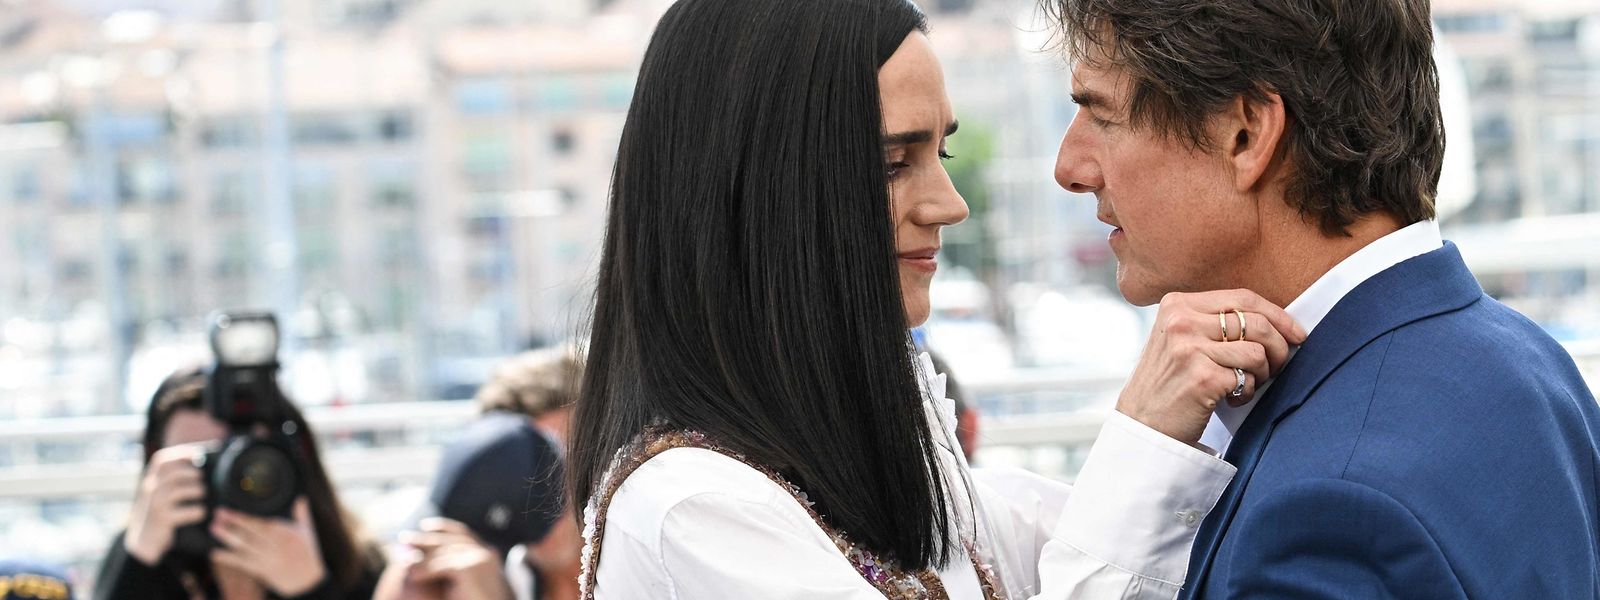 Tom Cruise und Jennifer Connelly beim Photocall für den Film "Top Gun : Maverick" in Cannes.